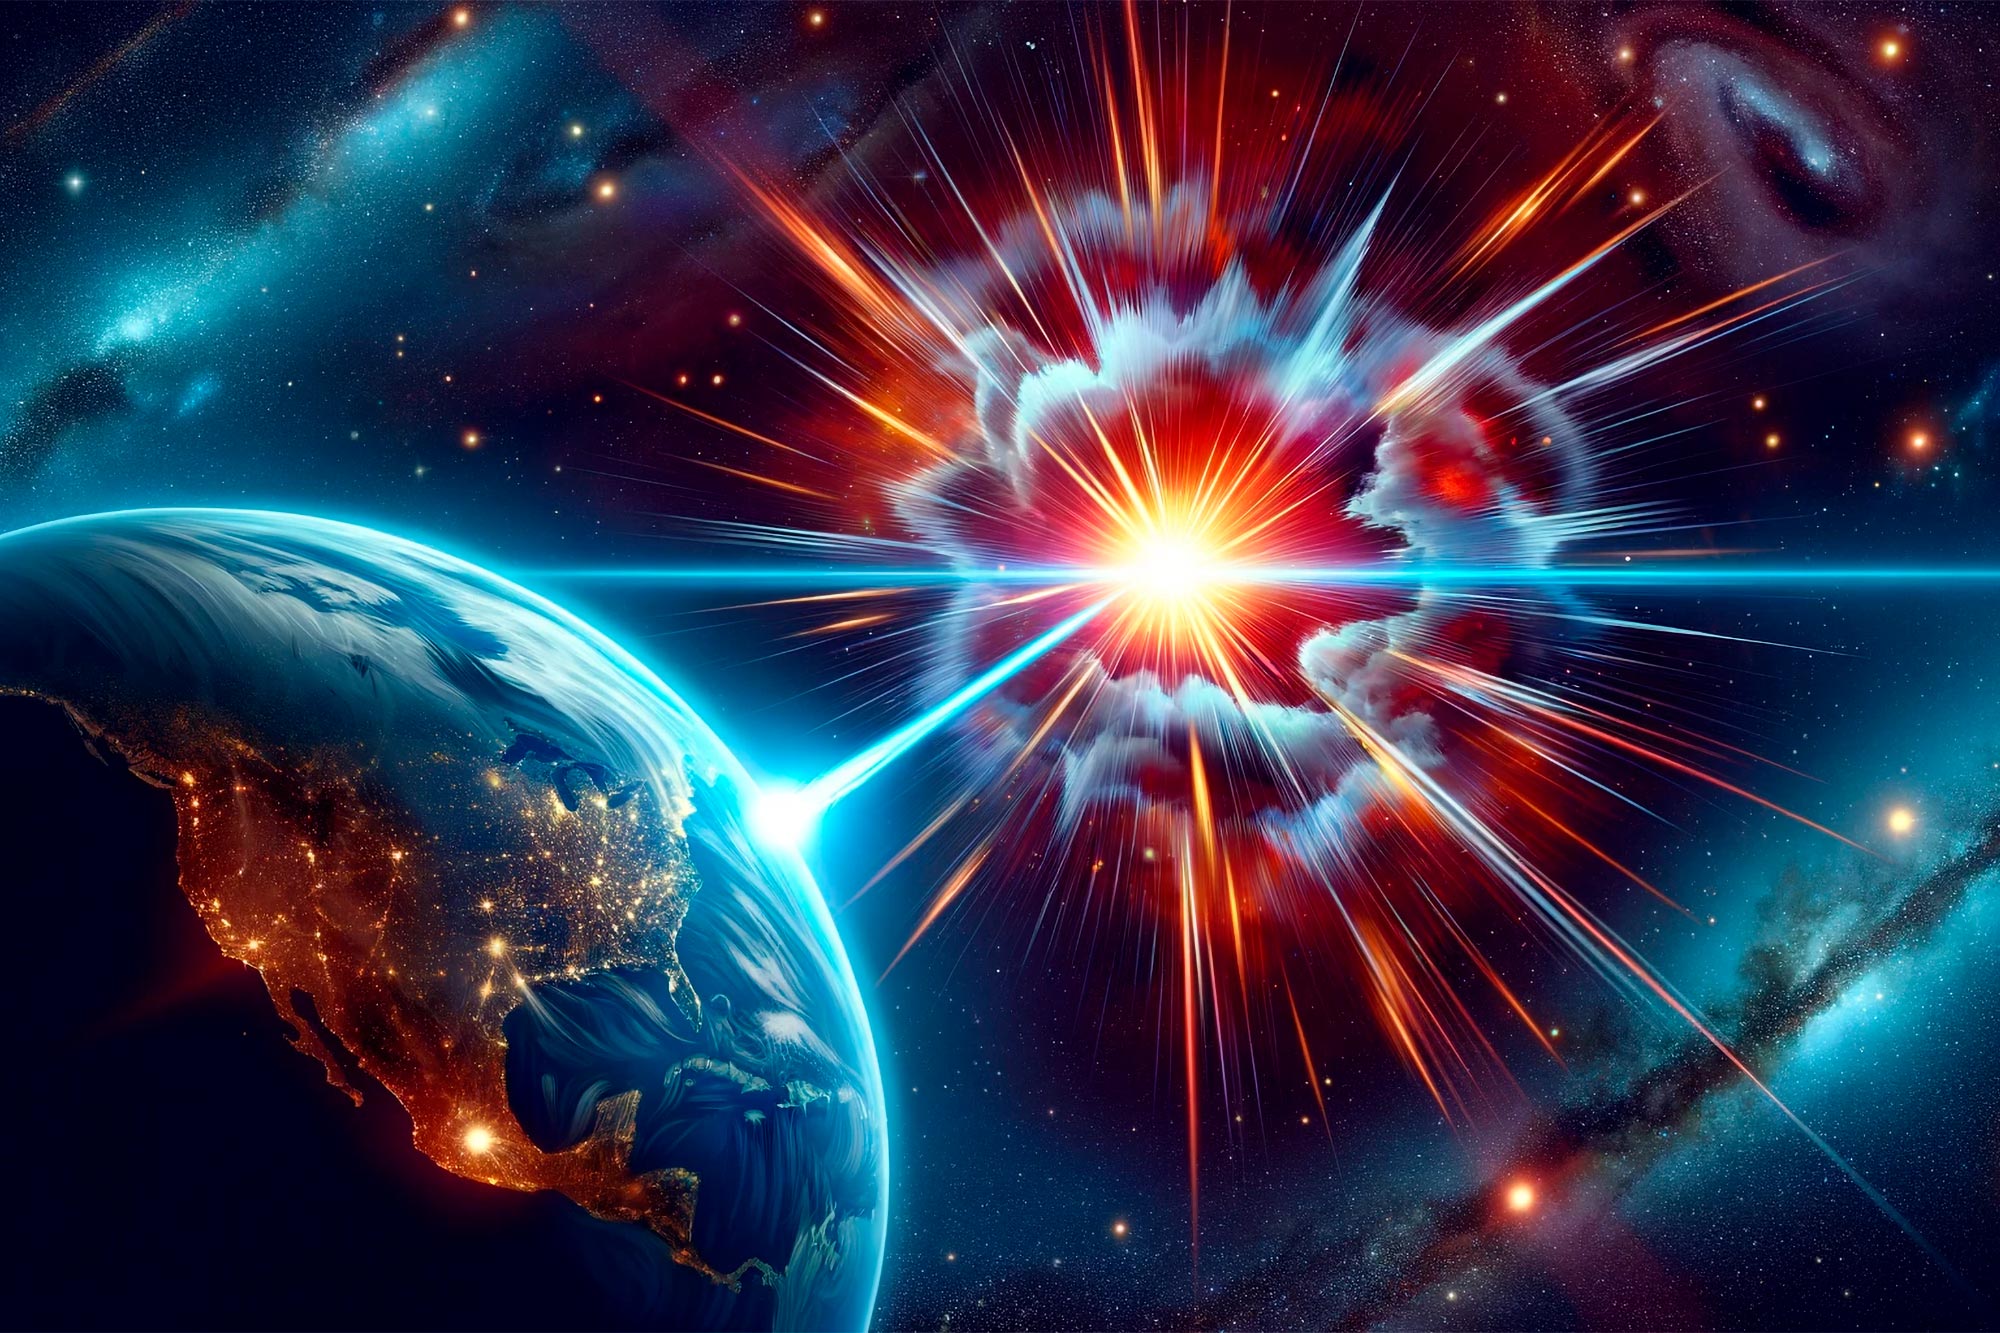 La Tierra golpeada por un histórico estallido de rayos gamma procedente de una estrella en explosión